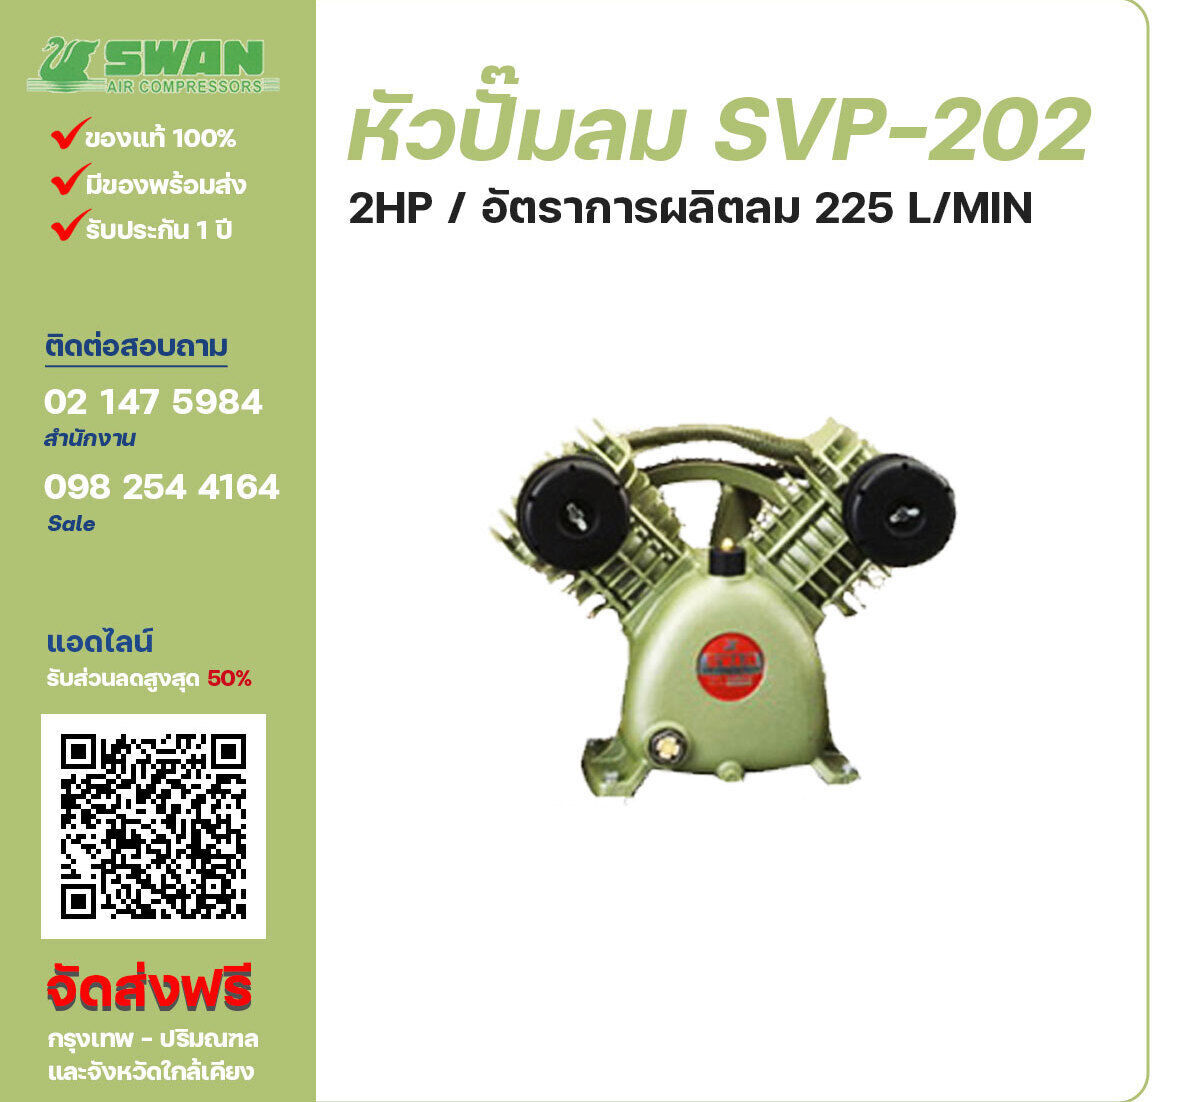 จำหน่ายหัวปั๊มลมสวอน ของแท้ 100% SWAN Bare Compressor รุ่น  SVP-202 ขนาด 2 แรงม้า อัตราการผลิตลม 225 ลิตร / นาที รับประกัน 3 เดือน ตามเงื่อนไขของบริษัทฯ
จัดส่งฟรี กรุงเทพ-ปริมณฑล